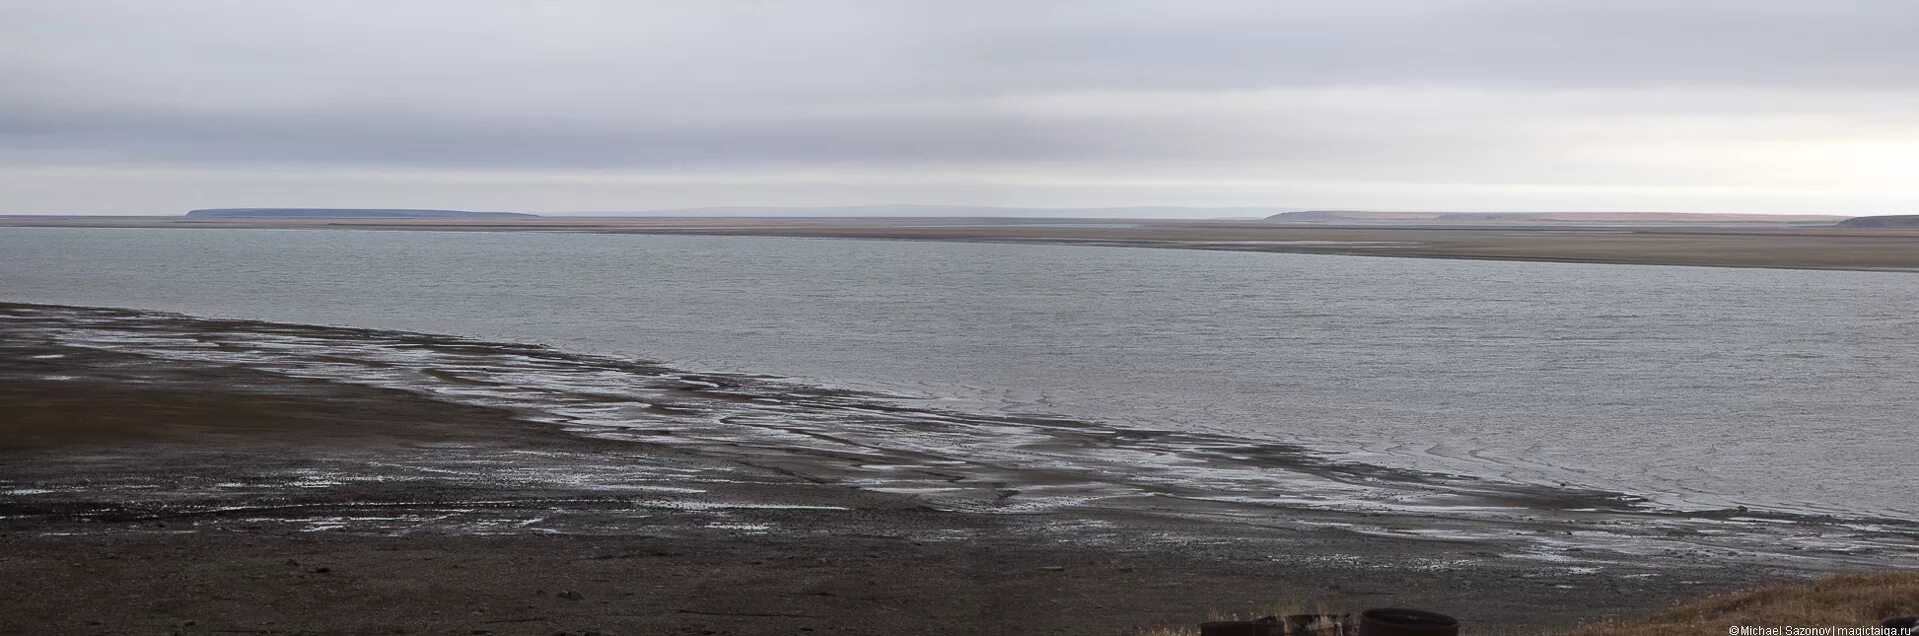 Пясина. Озеро Таймыр рельеф дна. Карта глубин озеро Таймыр. Таймырское озеро соленое или пресное. Длинной блистающей полосой тянется таймырское озеро